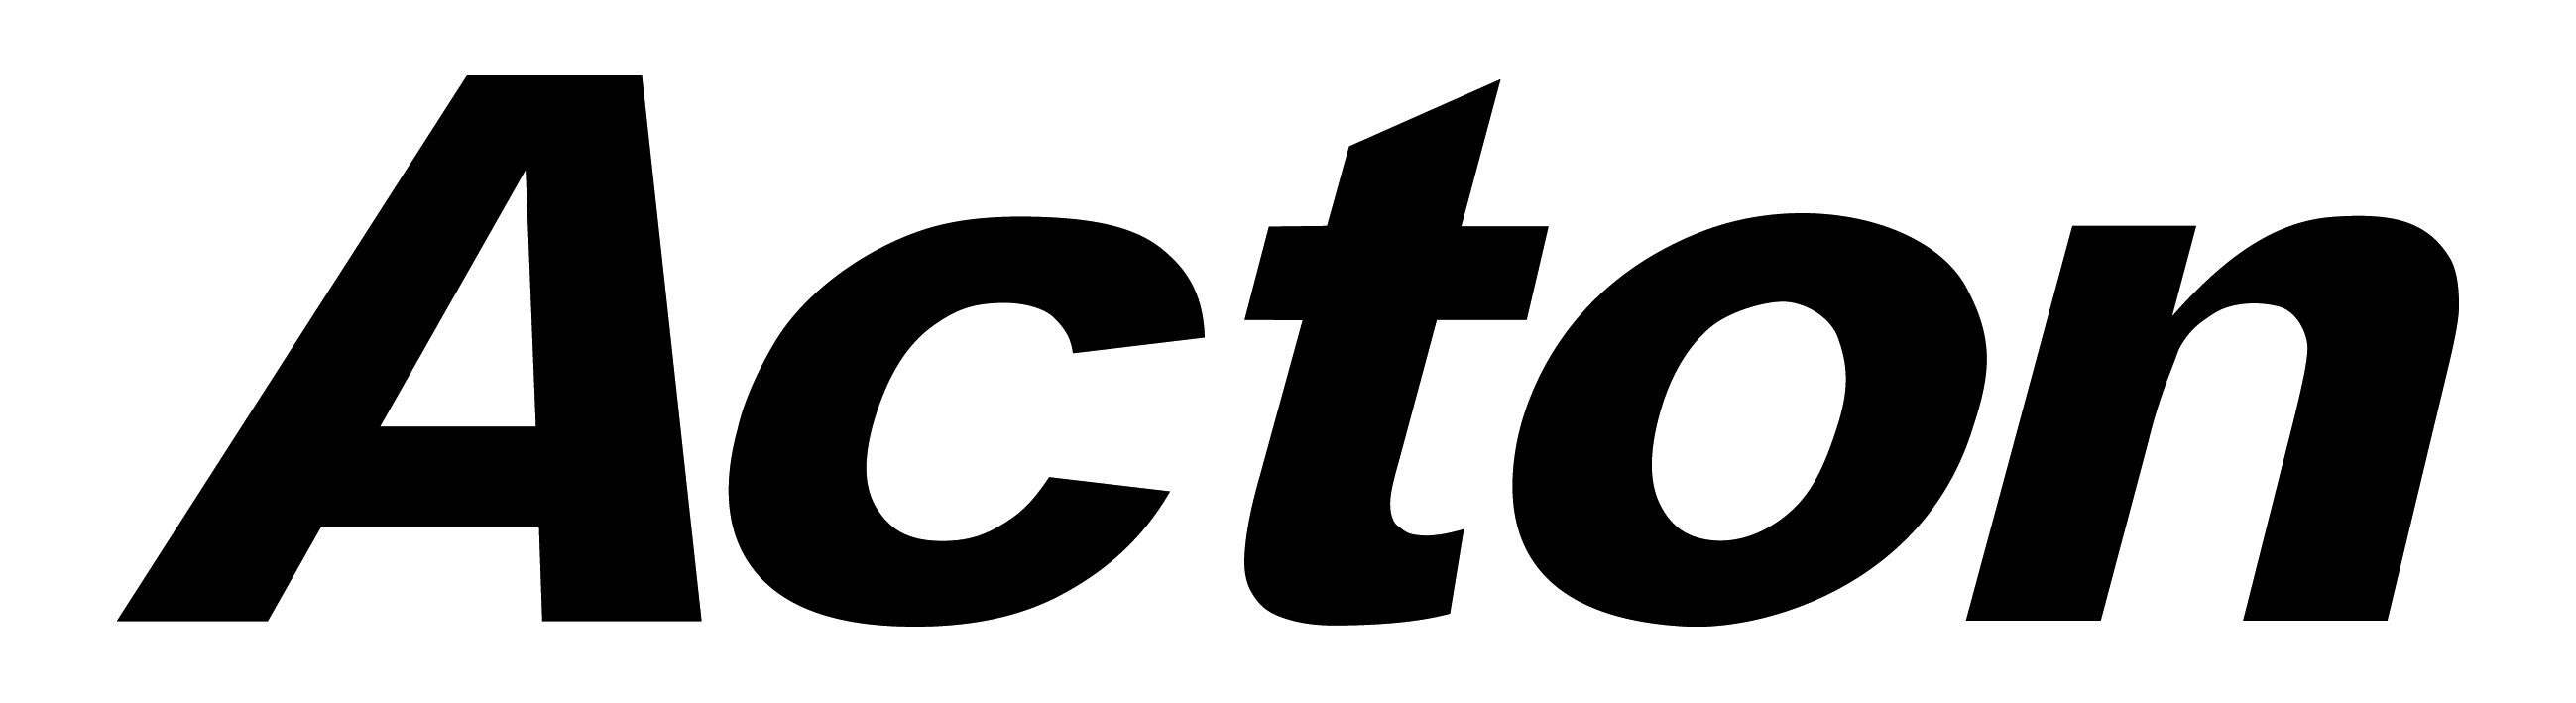 ACTON logo